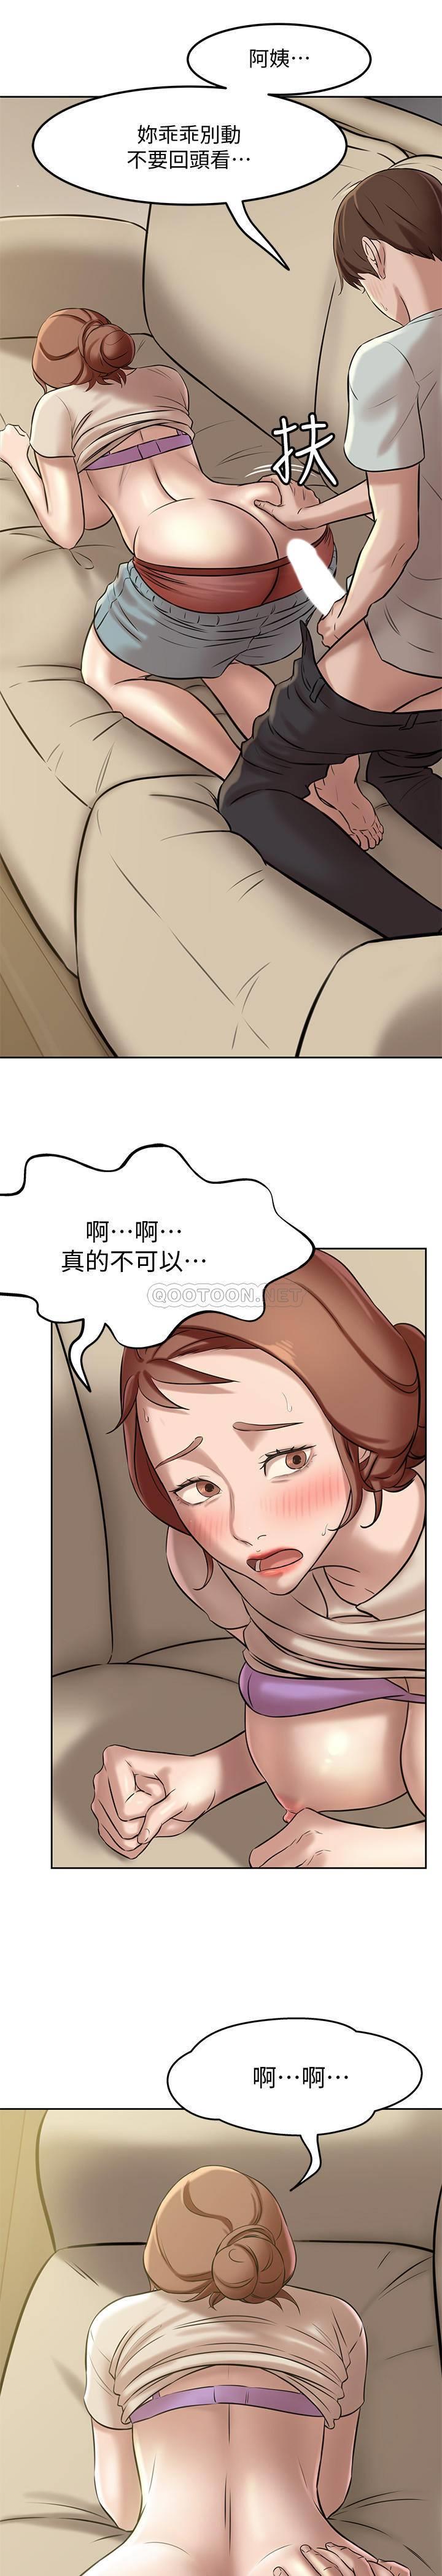 韩国污漫画 小褲褲筆記 第6话 - 阿姨也只是个普通女人 31